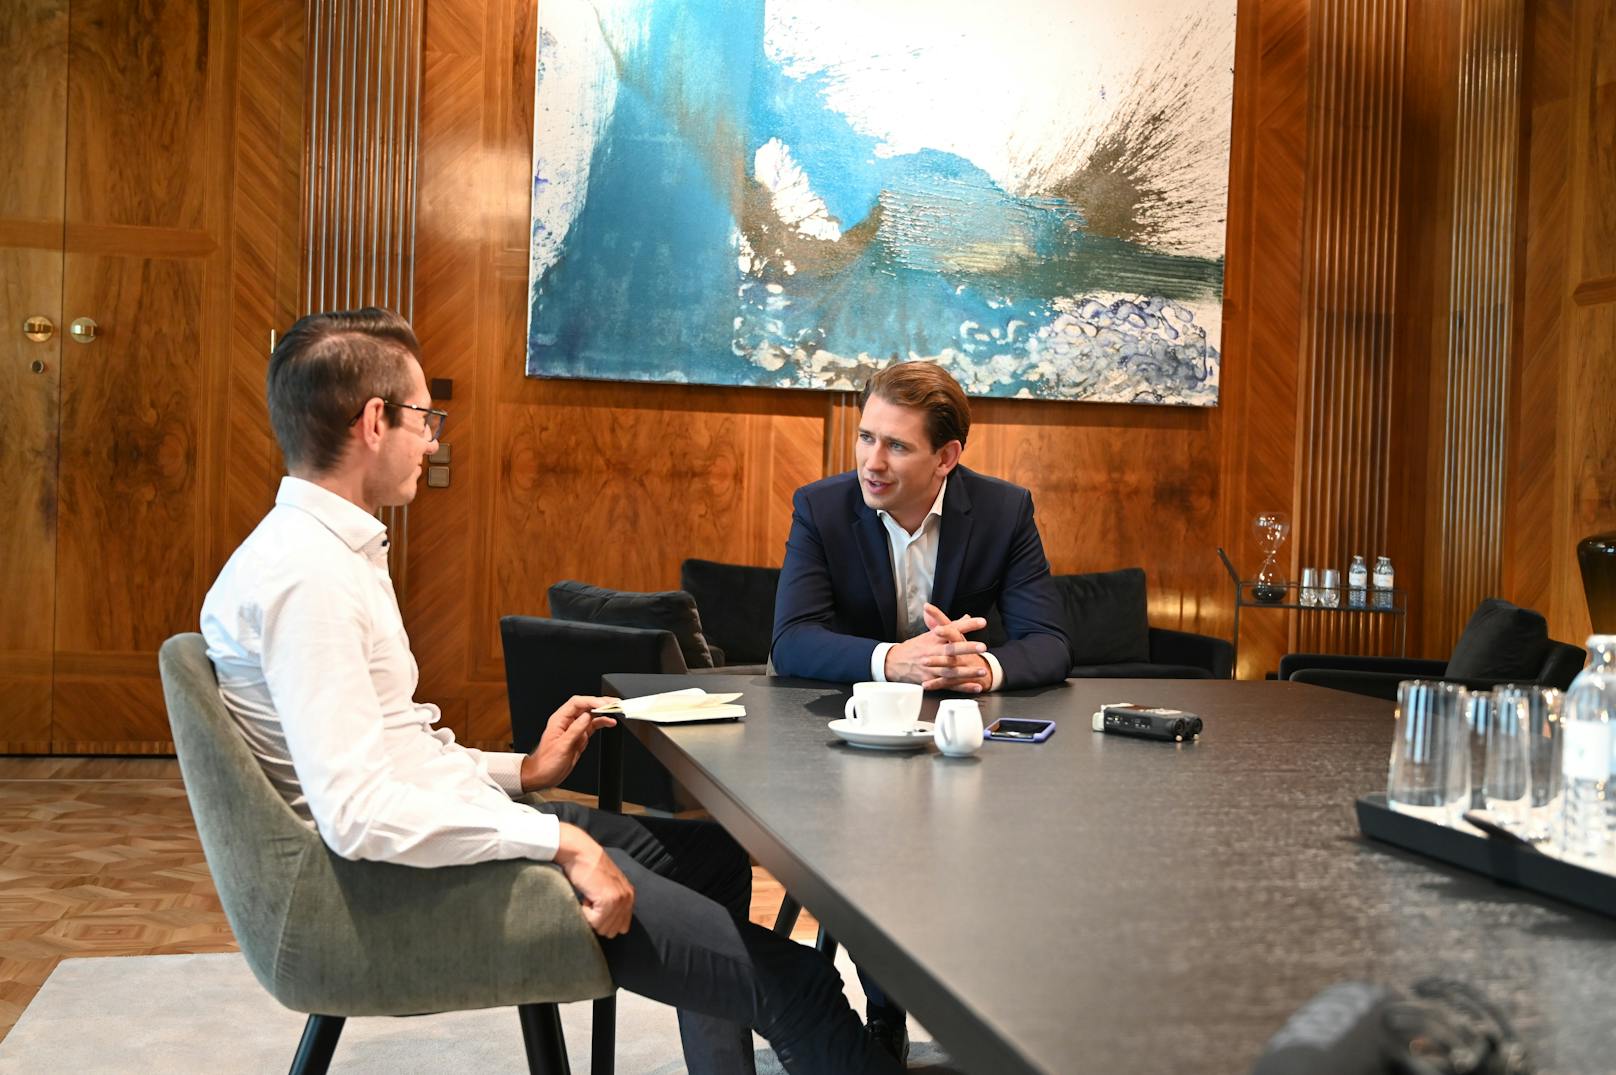 Interview im Kreisky-Zimmer: Sebastian Kurz im Gespräch mit <em>"Heute.at"-</em>Chefredakteur Clemens Oistric, an der Wand ein türkiser Nitsch